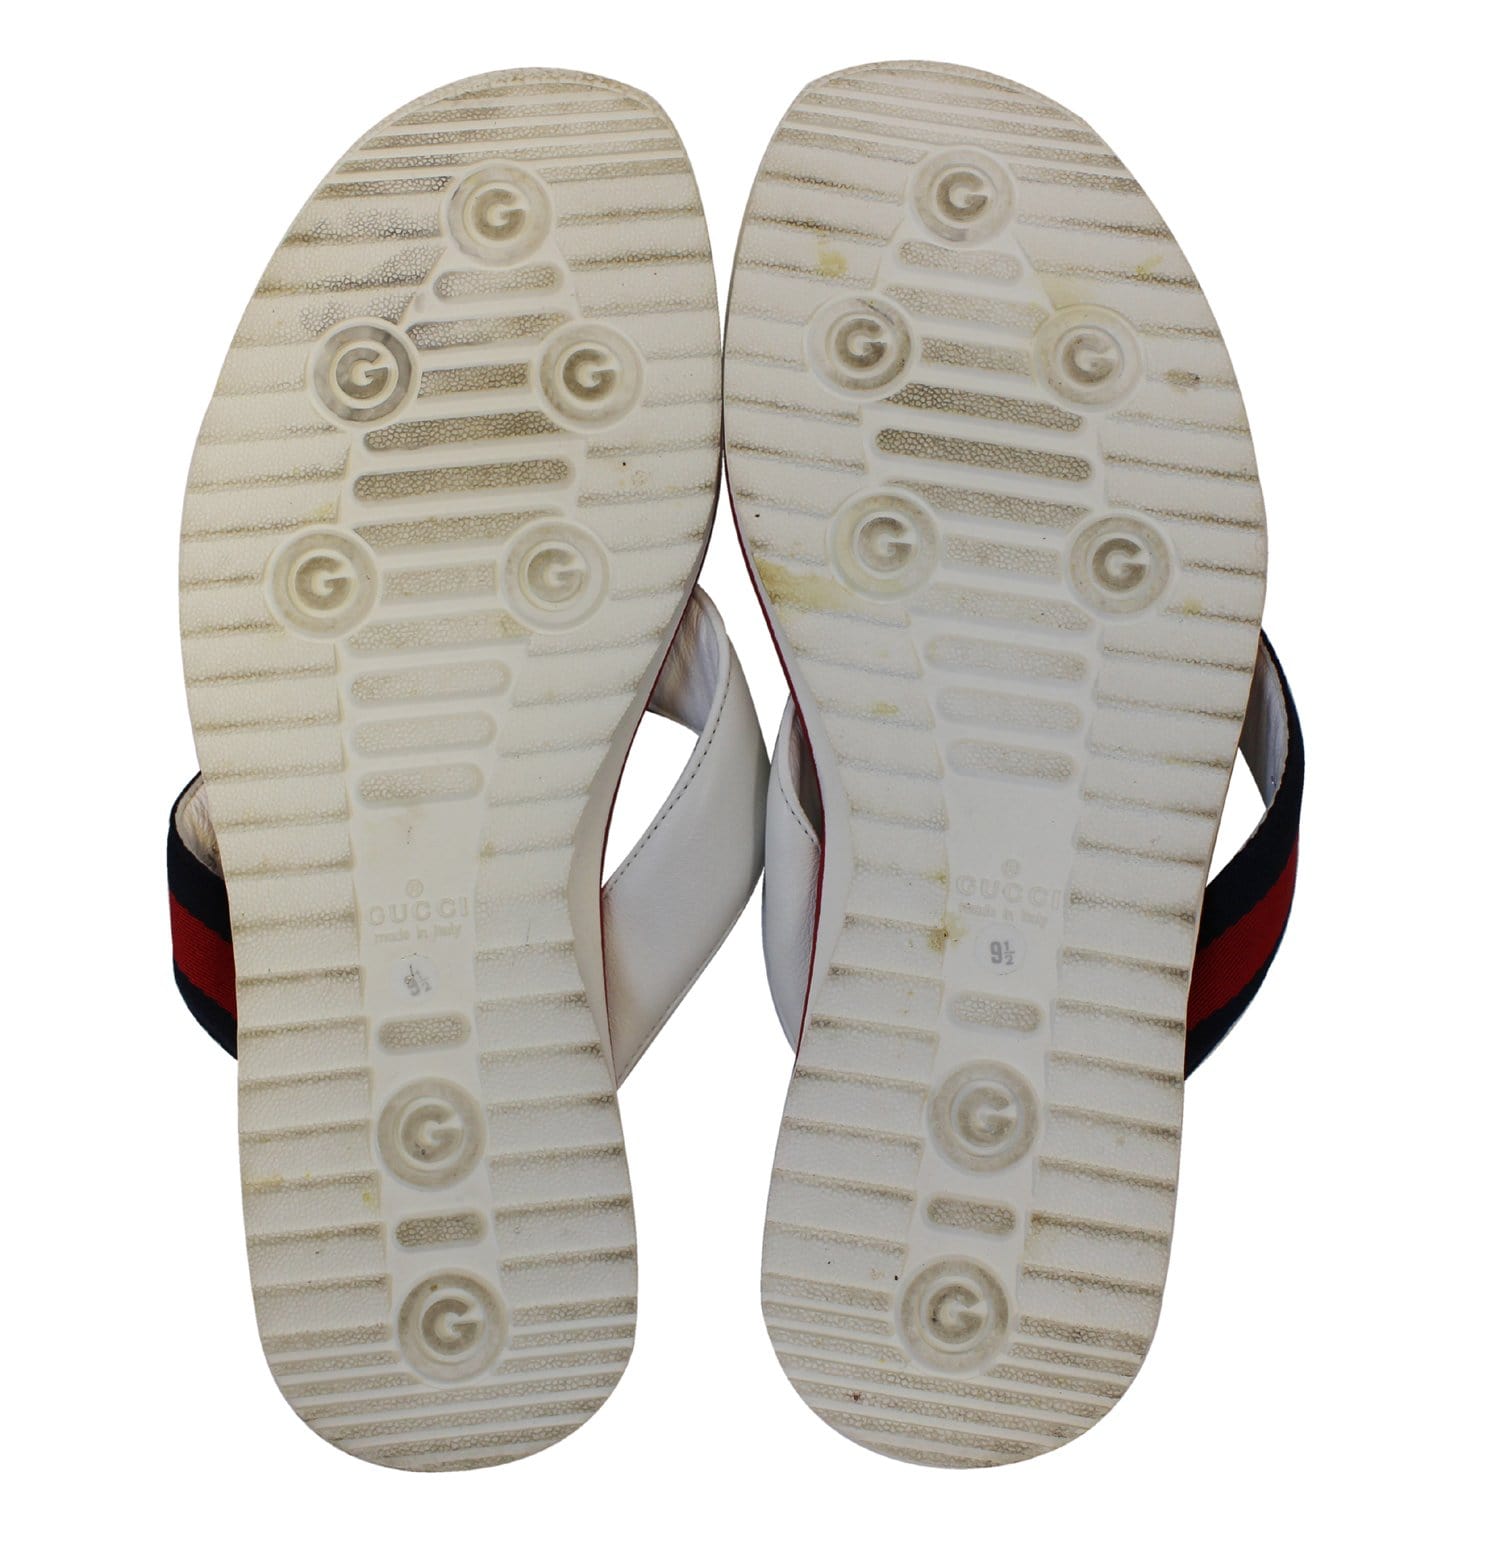 Gucci Flip-flops with logo, Men's Shoes